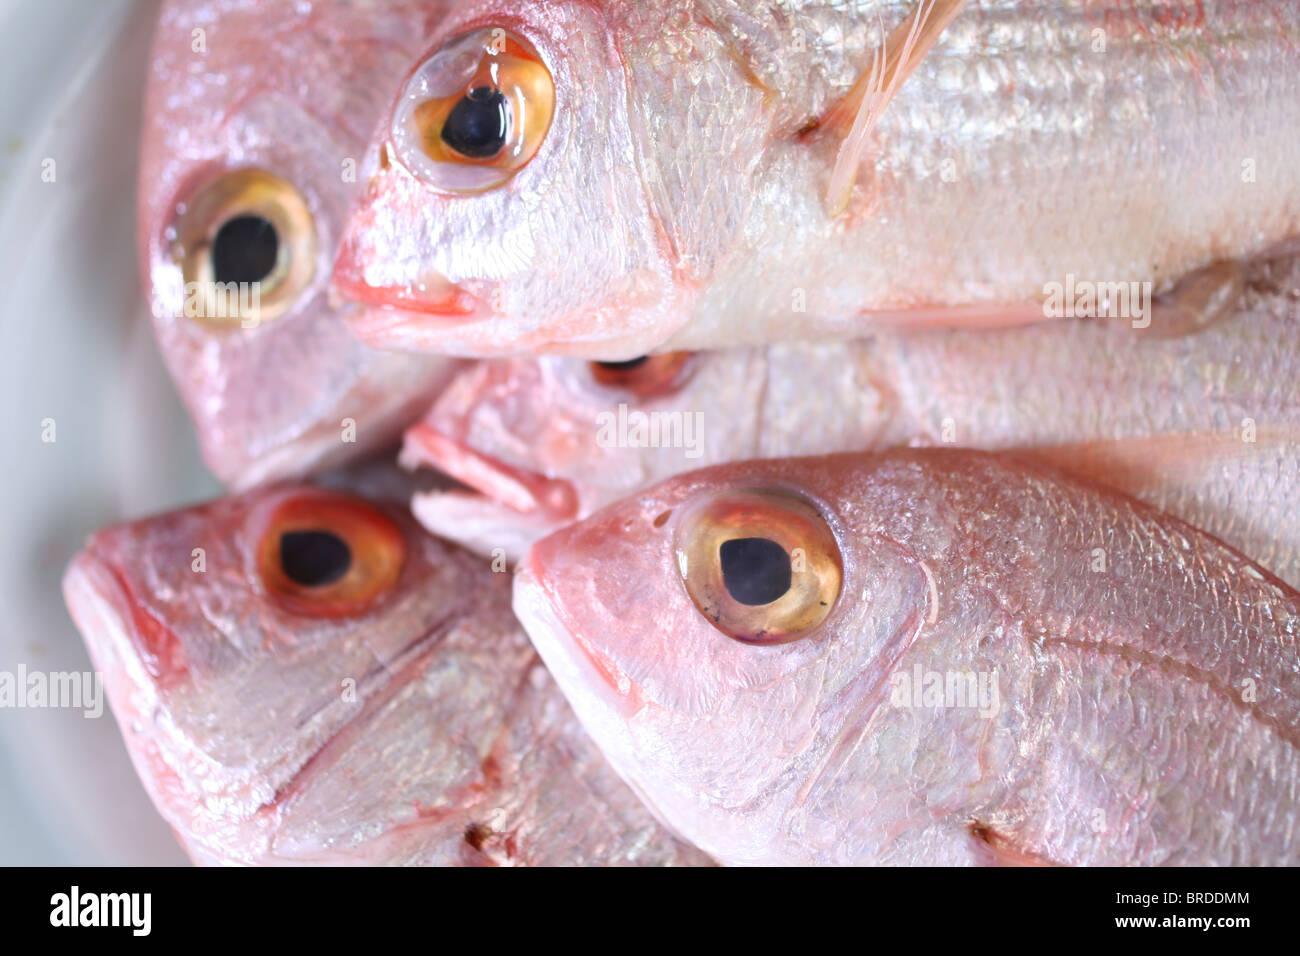 Détails de matières du poisson frais au marché, close-up Banque D'Images